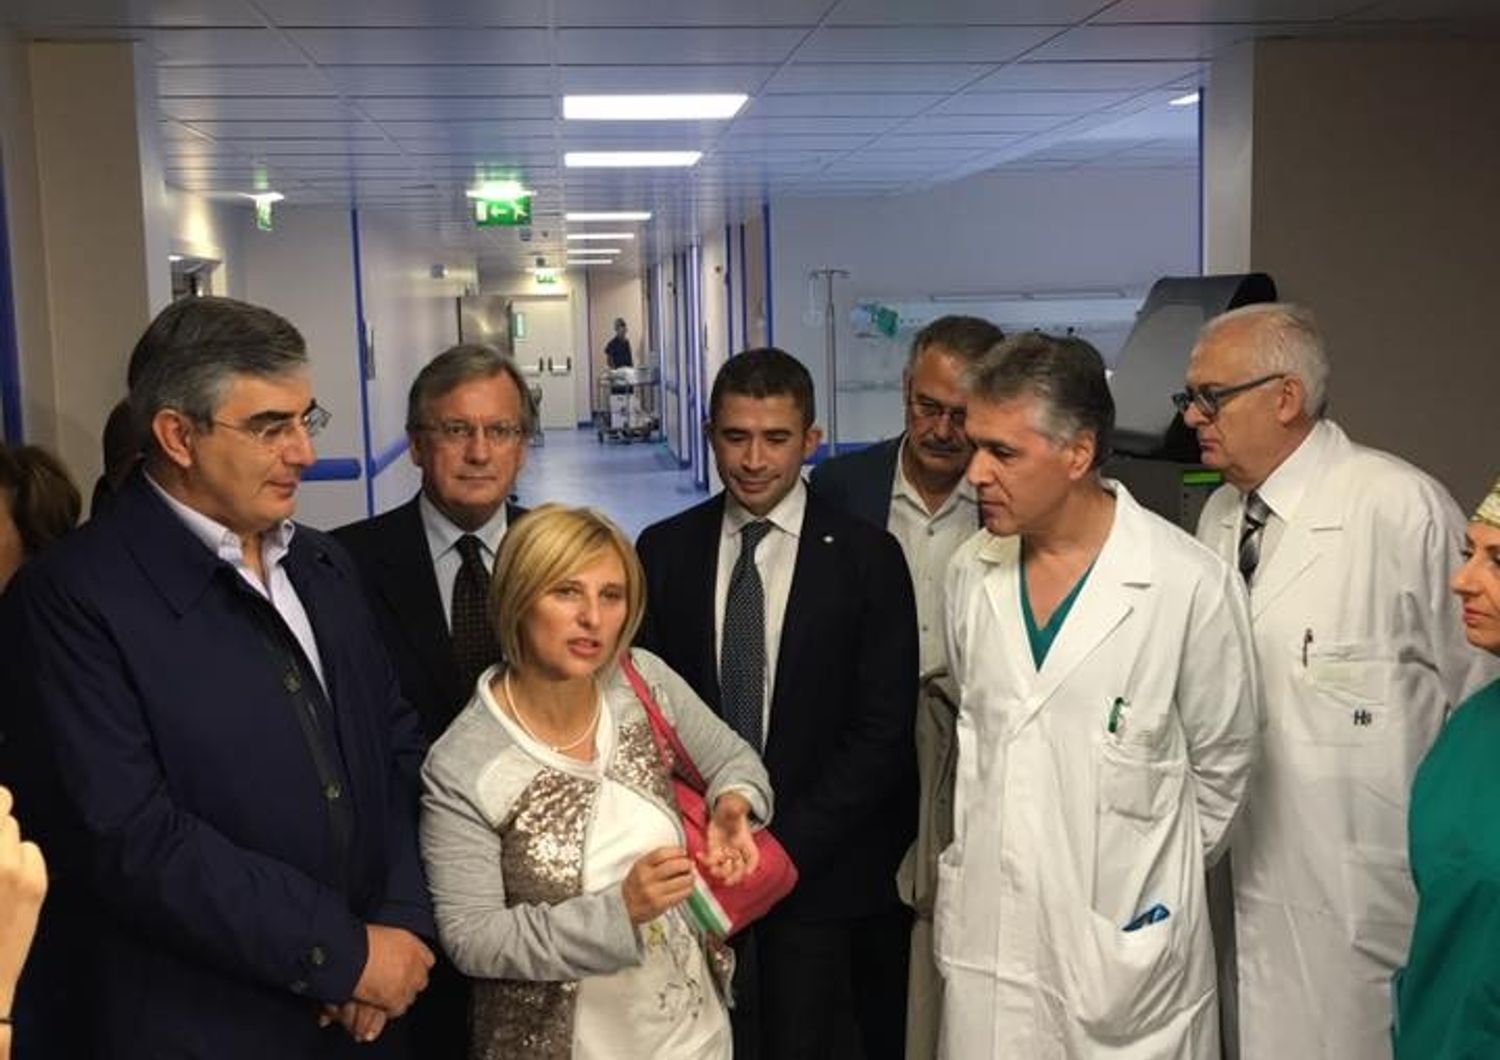 &nbsp;Luciano D'alfonso inaugurazione sale operatorio ospedale di sulmona